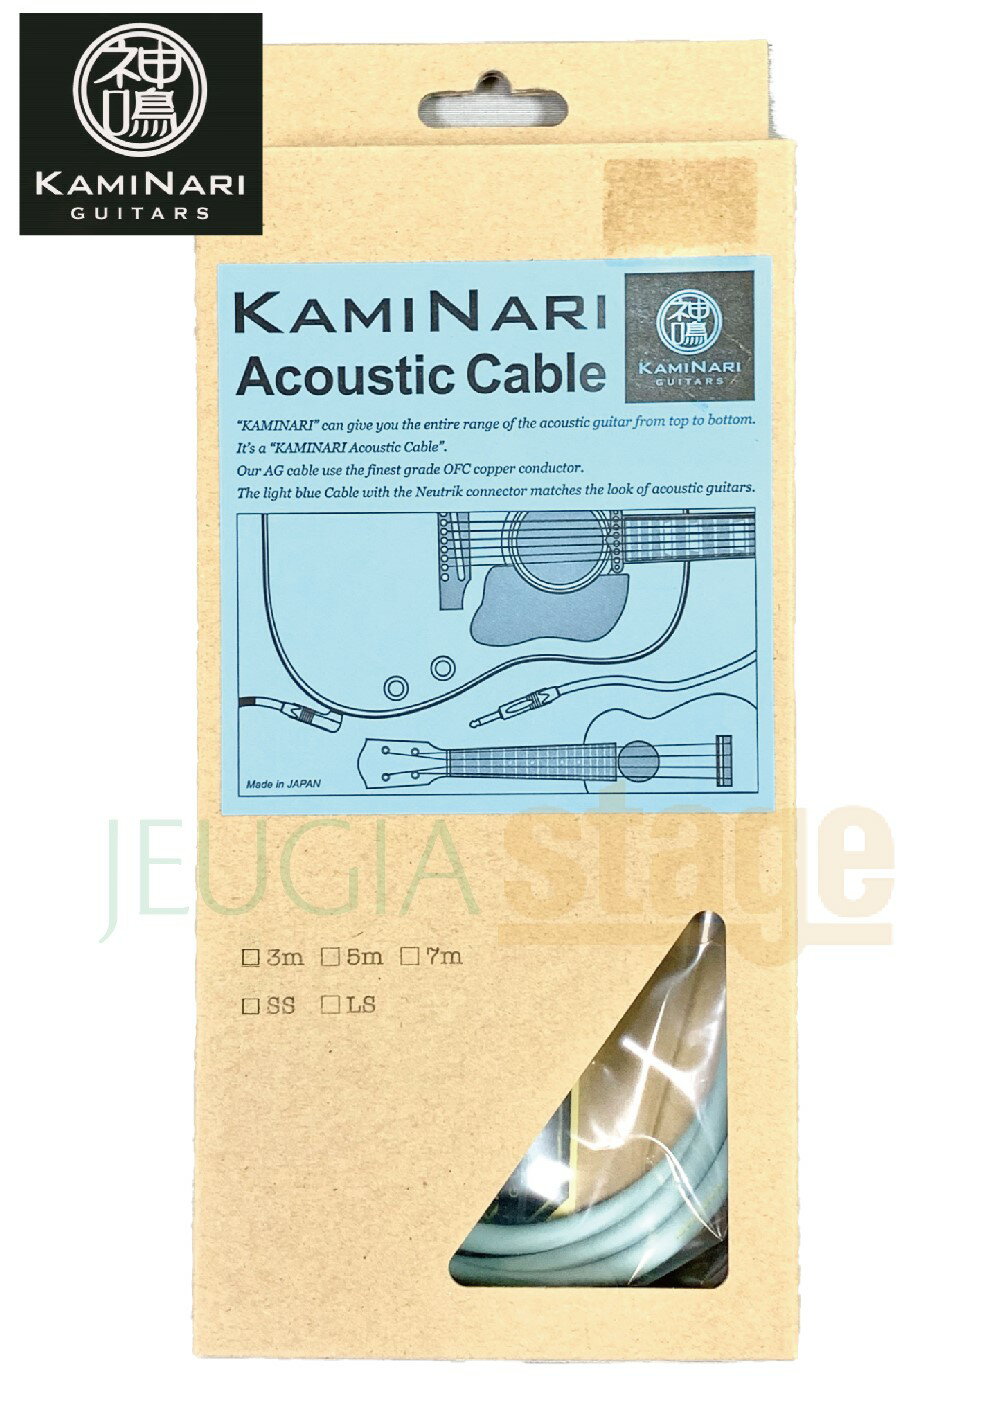 アコースティックギター専用ケーブル 3m SS KAMINARI アコースティックケーブルは、アコースティックギターに最も求められるギター本来のレンジと暖かみのあるサウンドを実現する、高品質エレクトリックアコースティックギター専用シールドケーブル。 酸化物を含まない無酸素銅で作られた日本製KAMINARIオリジナルOFCケーブルに、NEUTRIK社製プラグの組み合わせ。豊かな低音域と中音域に加え、シャキっとしたタイトな高音域。決して硬質にならず、且つ丸くもない、『柔らかで奥行のあるサウンド』が特徴。 ※商品画像はサンプルです。 ★掲載の商品は店頭や他のECサイトでも並行して販売しております。在庫情報の更新には最大限の努力をしておりますが、ご注文が完了しましても売り切れでご用意できない場合がございます。 　また、お取り寄せ商品の場合、生産完了などの理由でご用意できない場合がございます。 　その際はご注文をキャンセルさせていただきますので、予めご了承くださいませ。 ★お届け先が北海道や沖縄、その他離島の場合、「送料無料」と表記の商品であっても別途中継料や送料を頂戴いたします。その際は改めてご連絡を差し上げますのでご了承ください。　